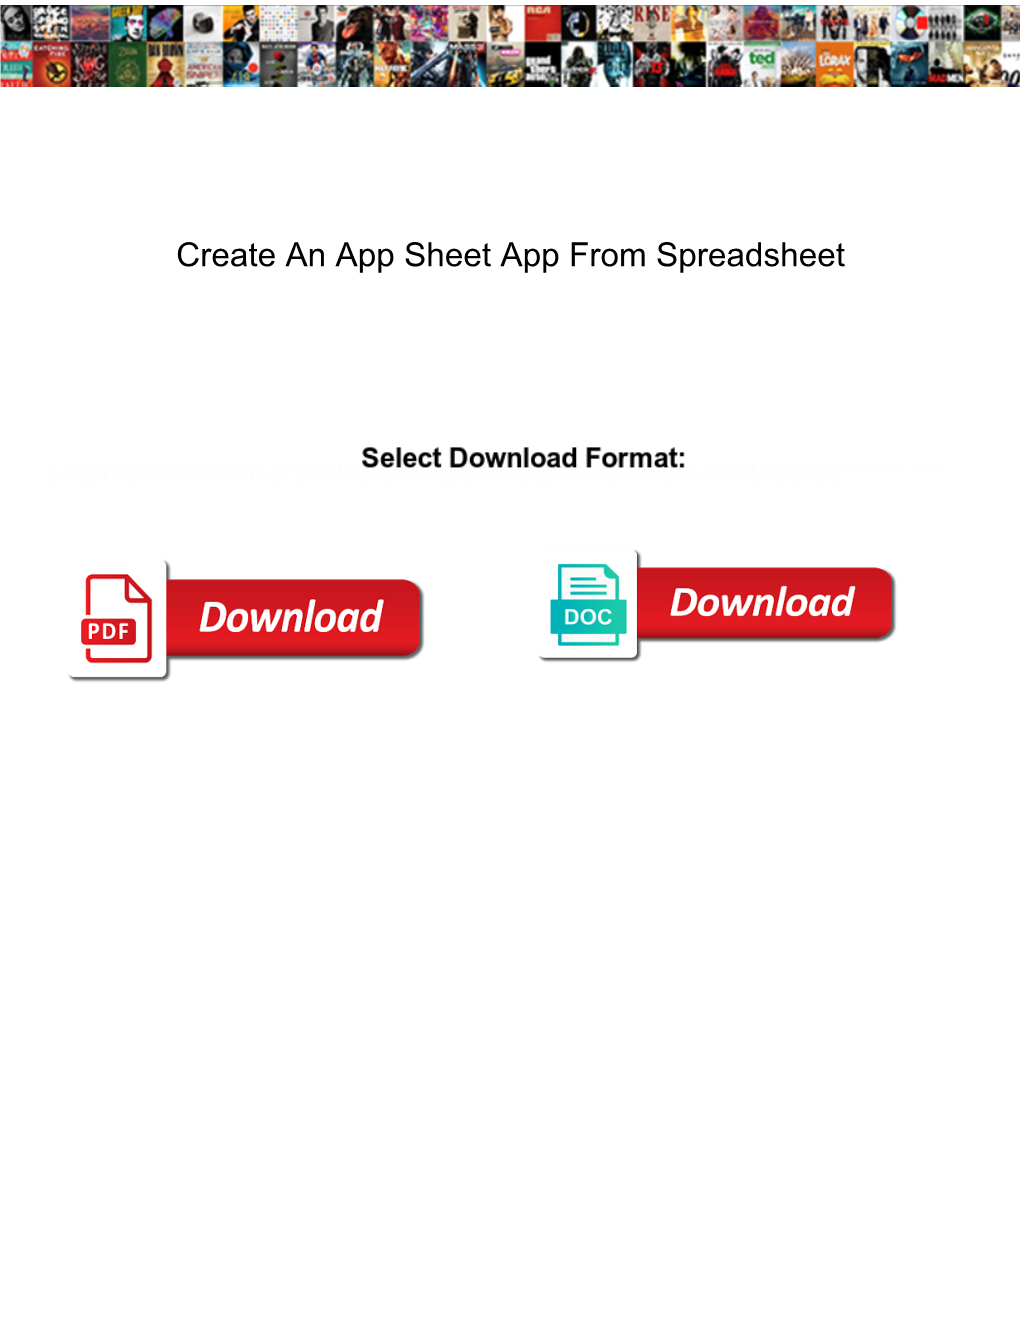 Create an App Sheet App from Spreadsheet